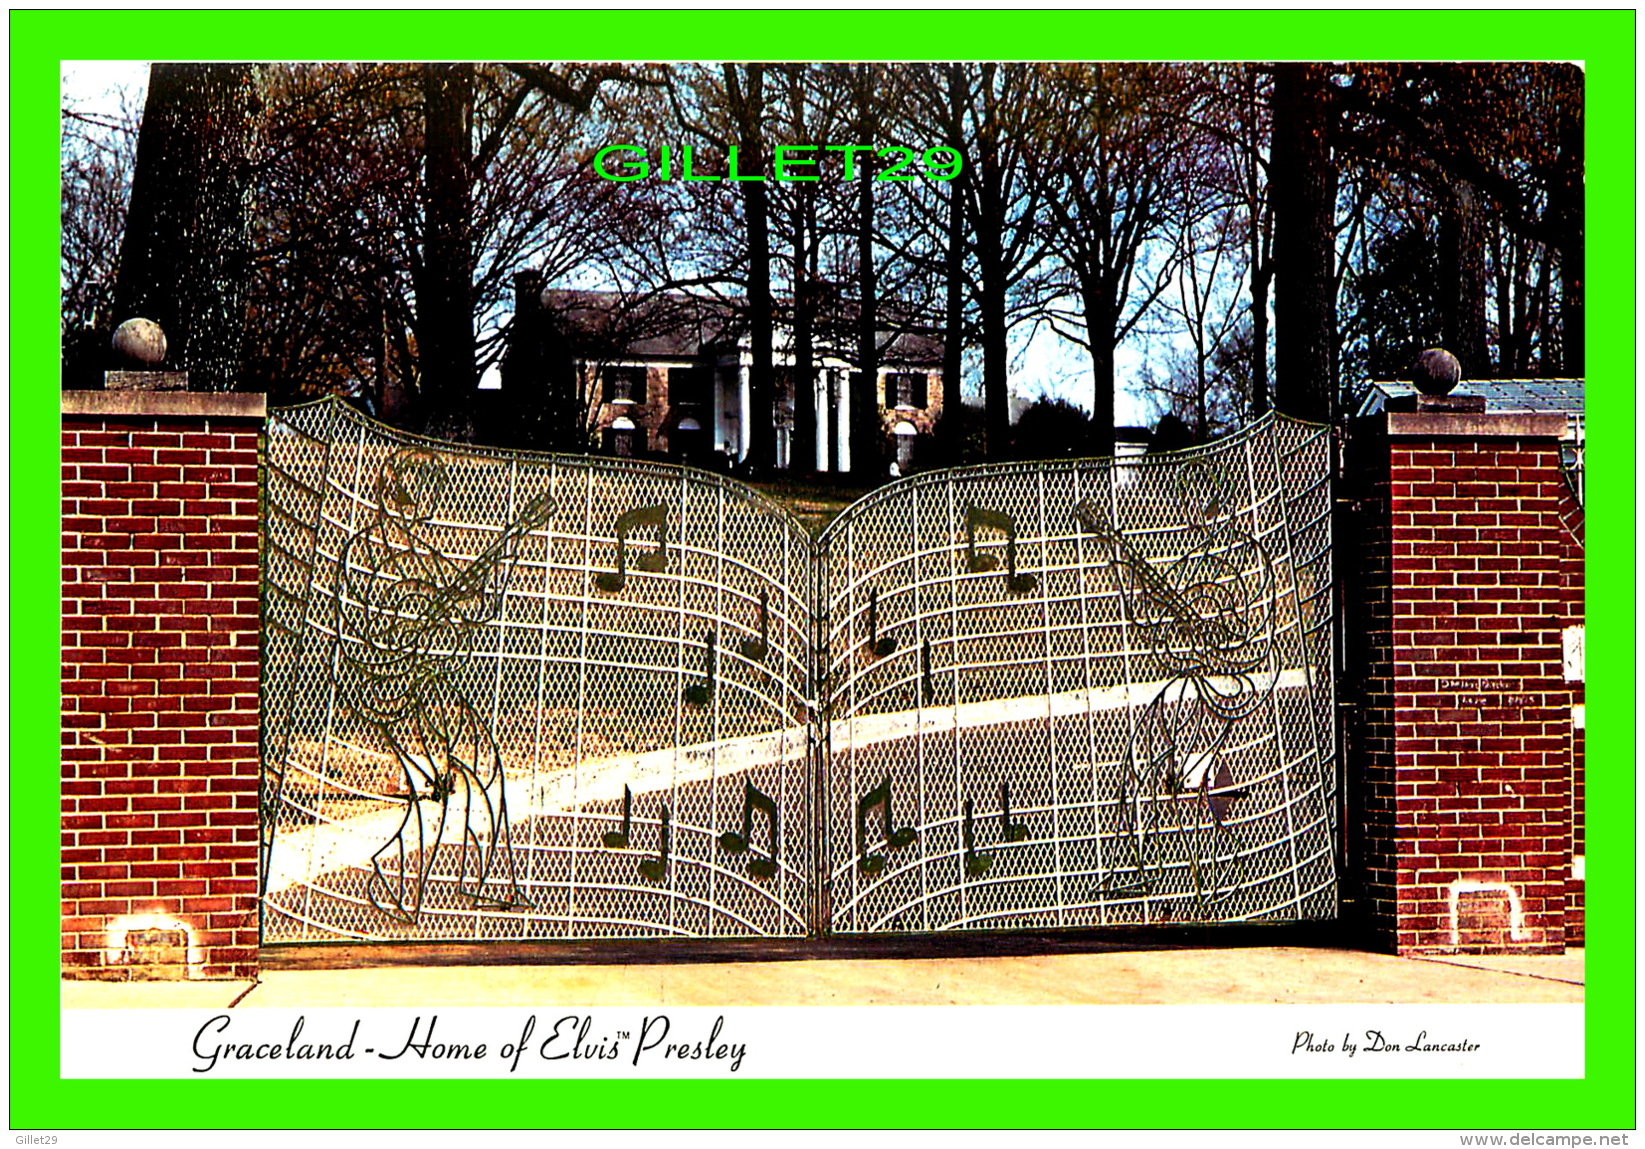 MEMPHIS, TN - GRACELAND, THE HOME OF ELVIS PRESLEY - PHOTO BY DON LANCASTER - - Memphis